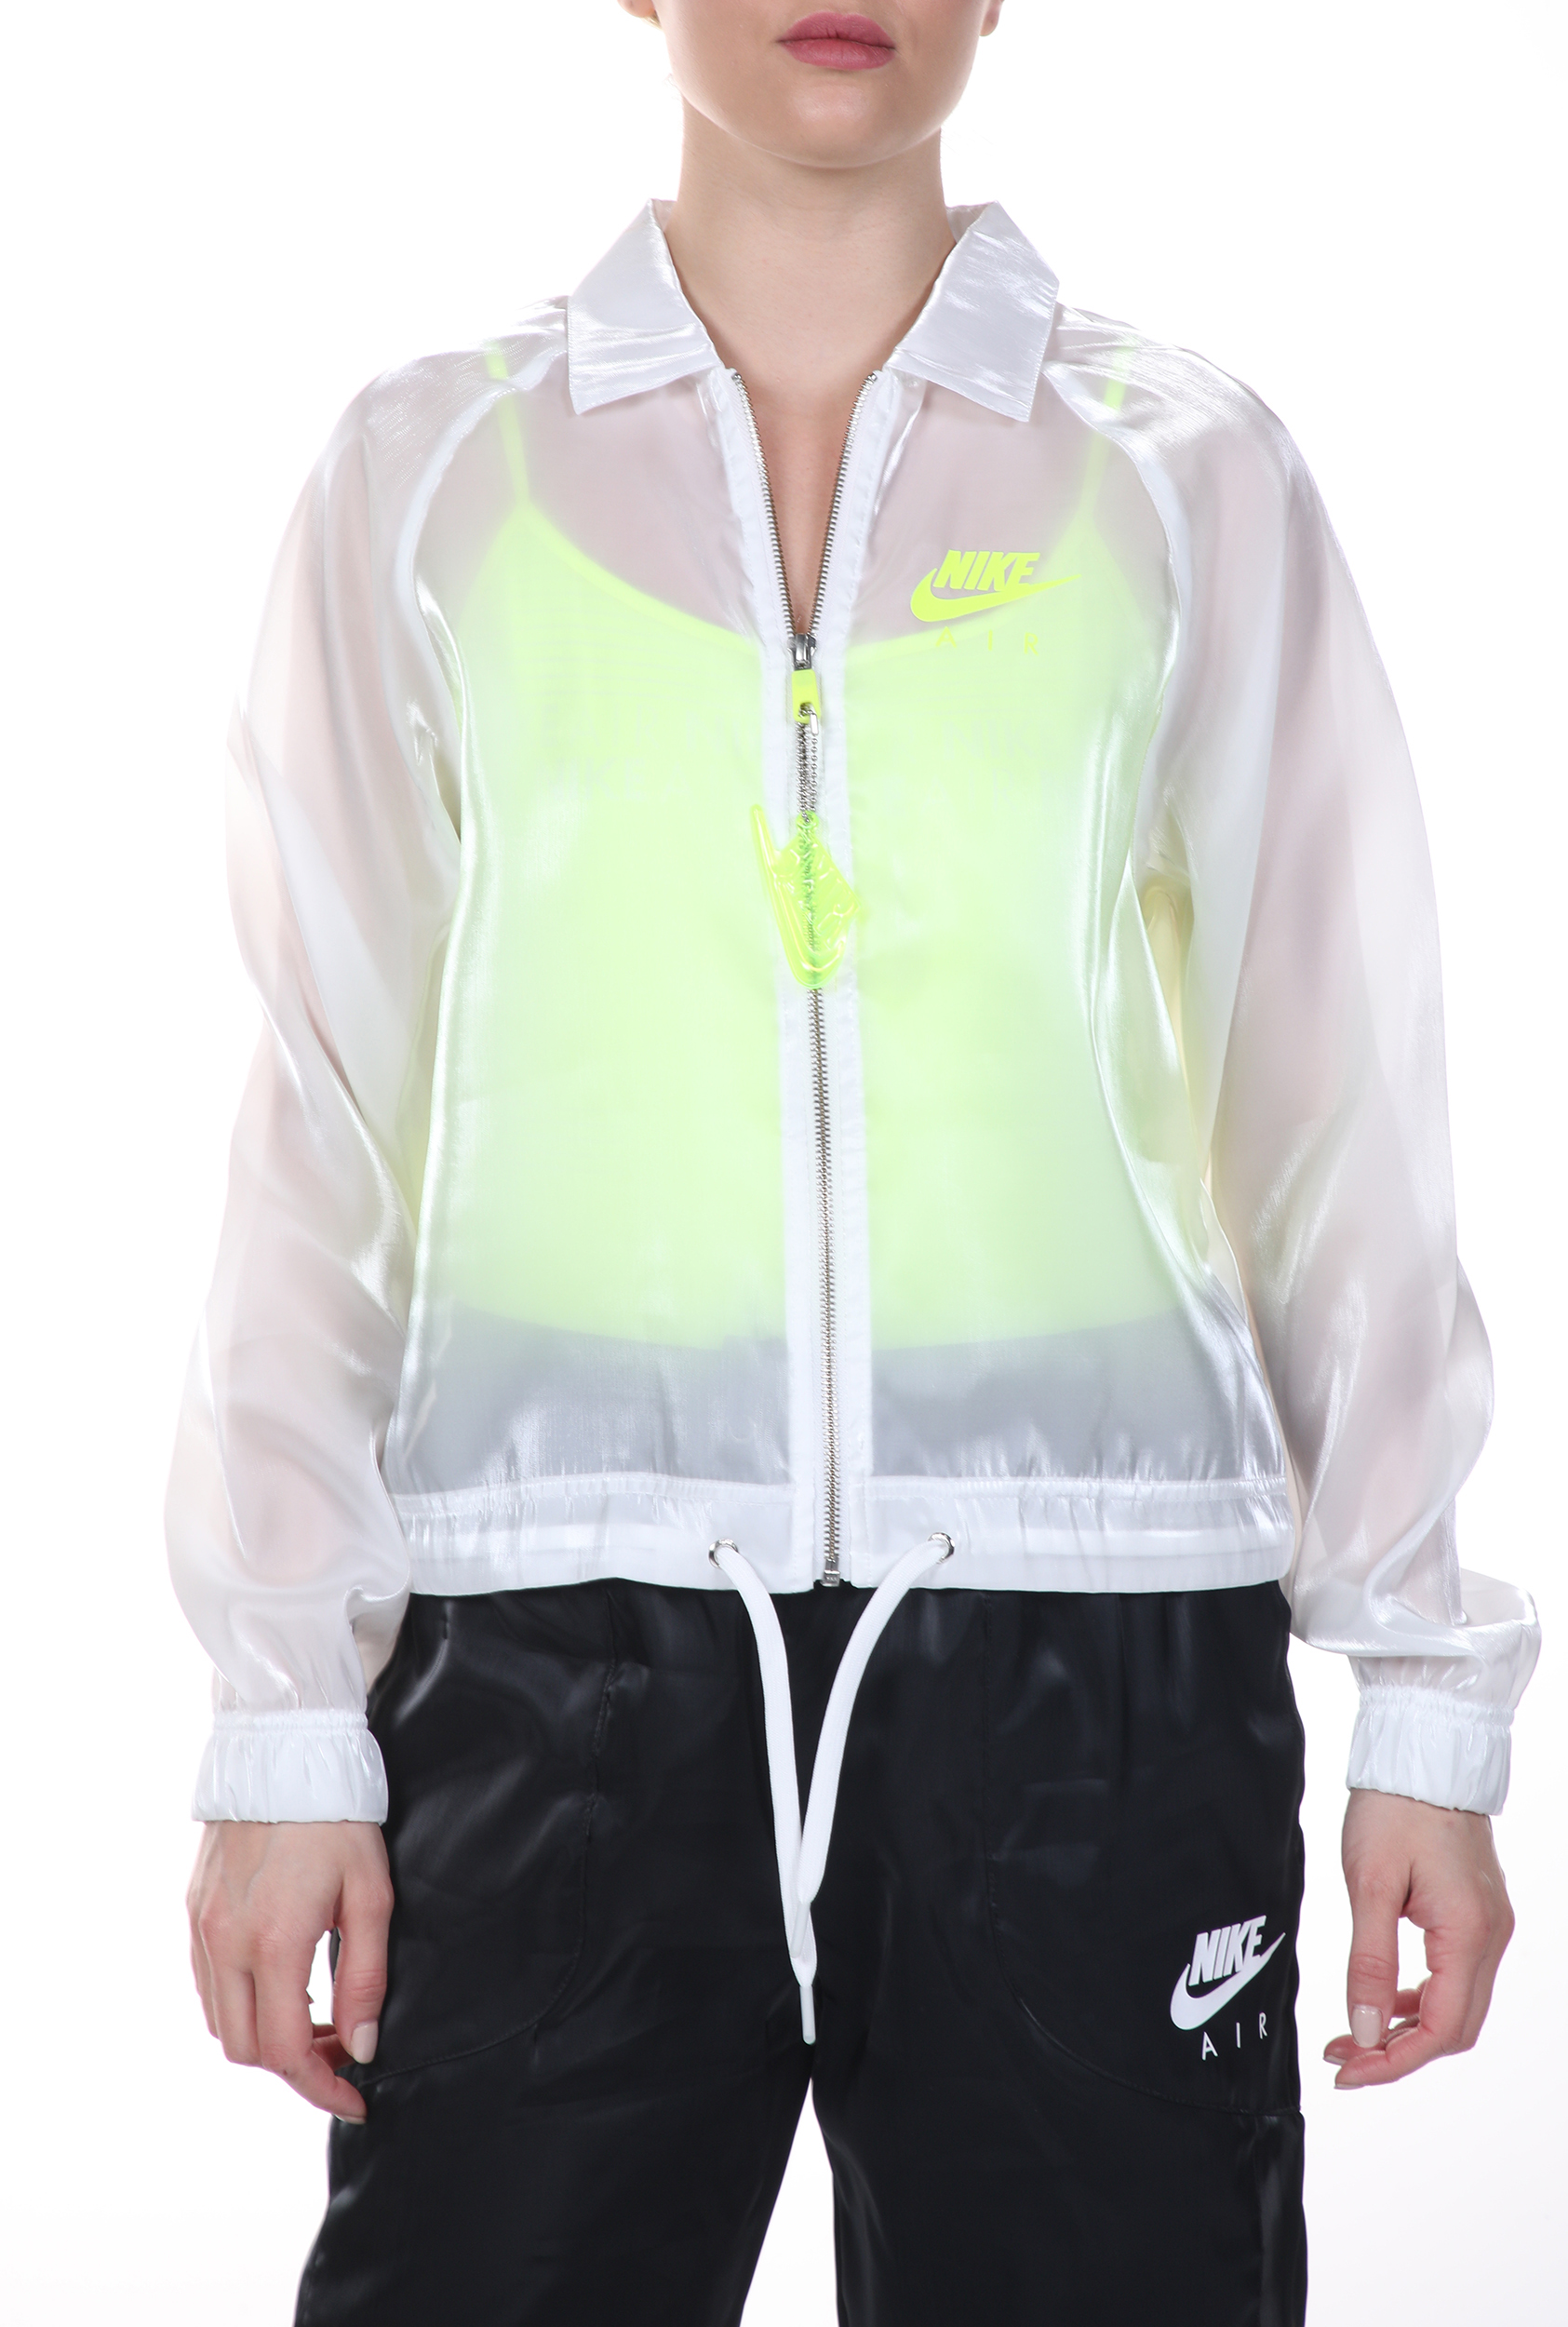 Γυναικεία/Ρούχα/Πανωφόρια/Τζάκετς NIKE - Γυναικείο jacket NIKE NSW AIR JKT SHEEN λευκό